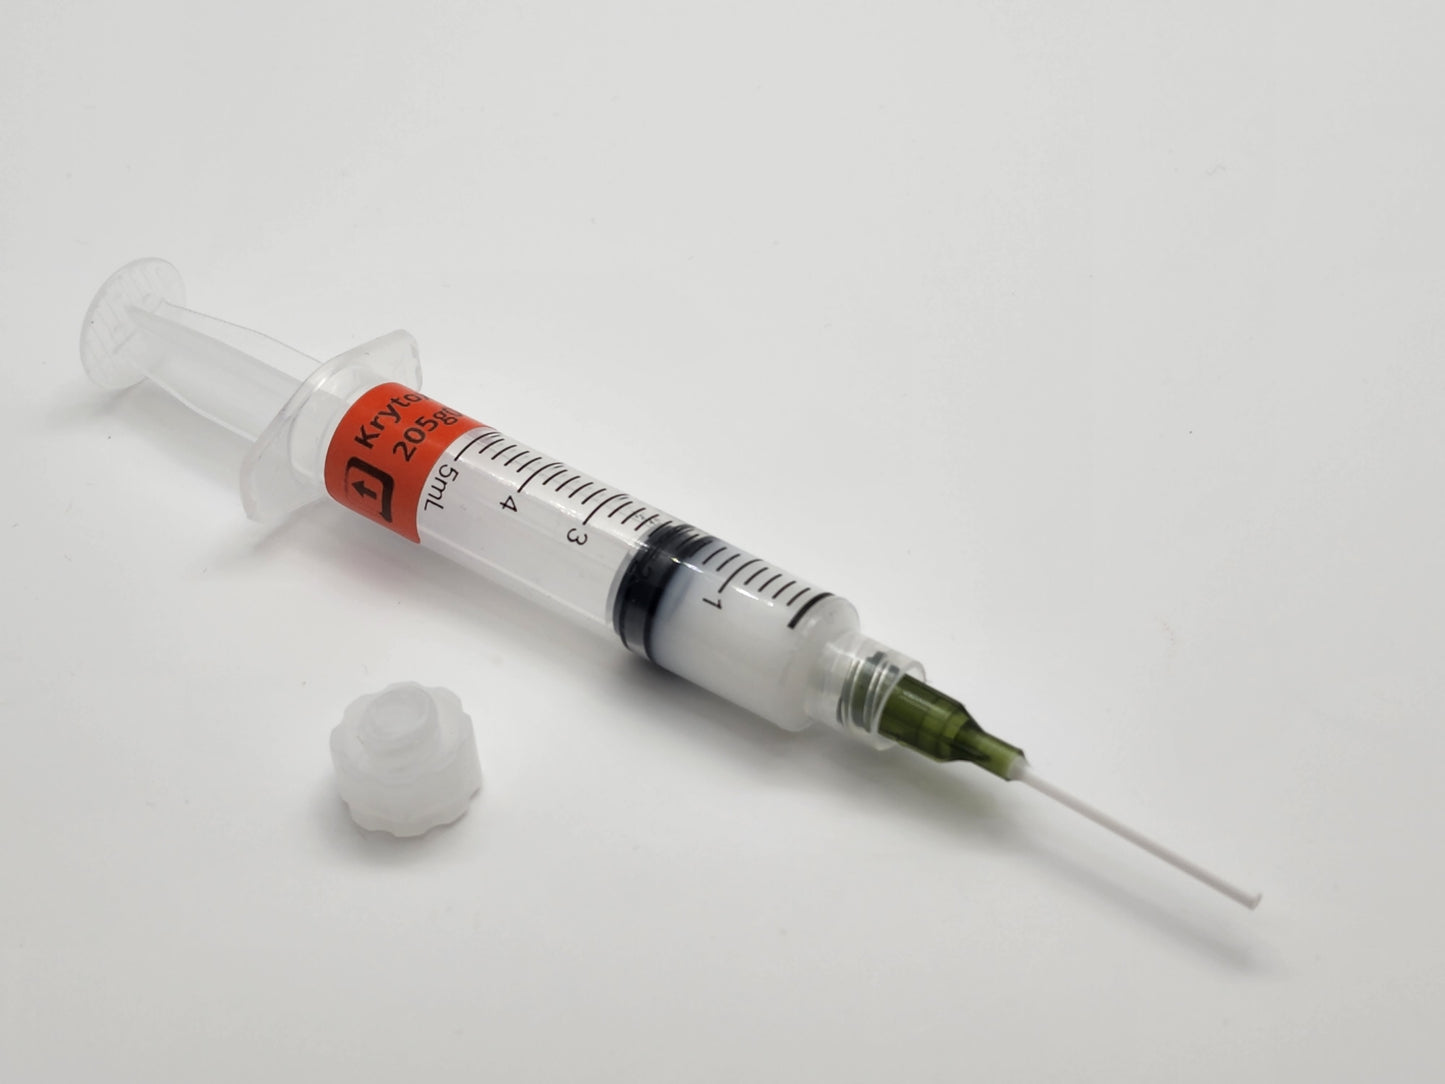 Stabilizer Grease Syringe Kit –